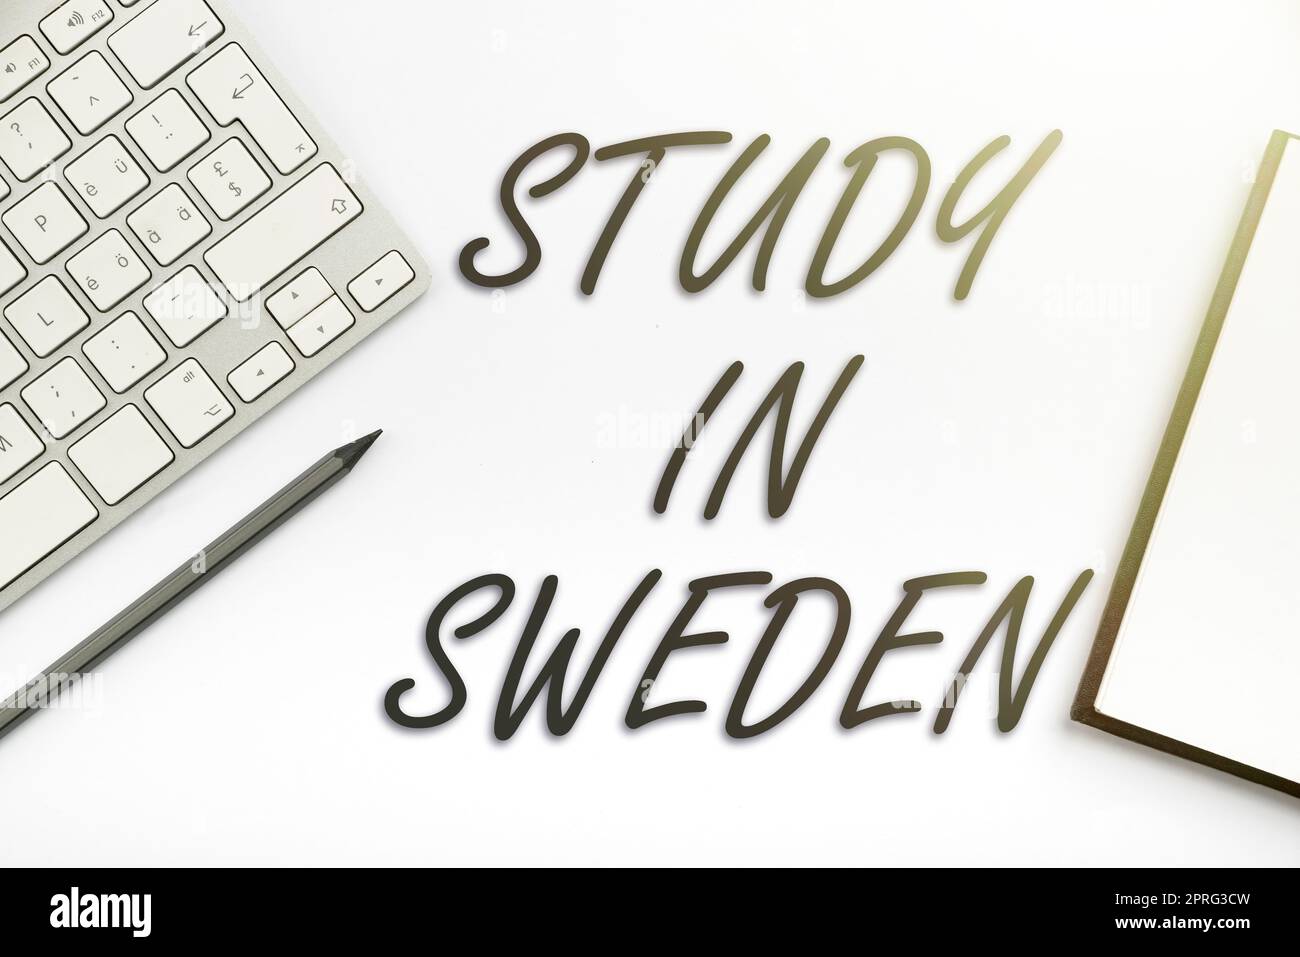 Konzeptionelle Titelstudie in Schweden. Word für Reisen in ein europäisches Land zu Bildungszwecken zirkuläre Denkblasen, die Nachrichten in sozialen Medien darstellen. Stockfoto